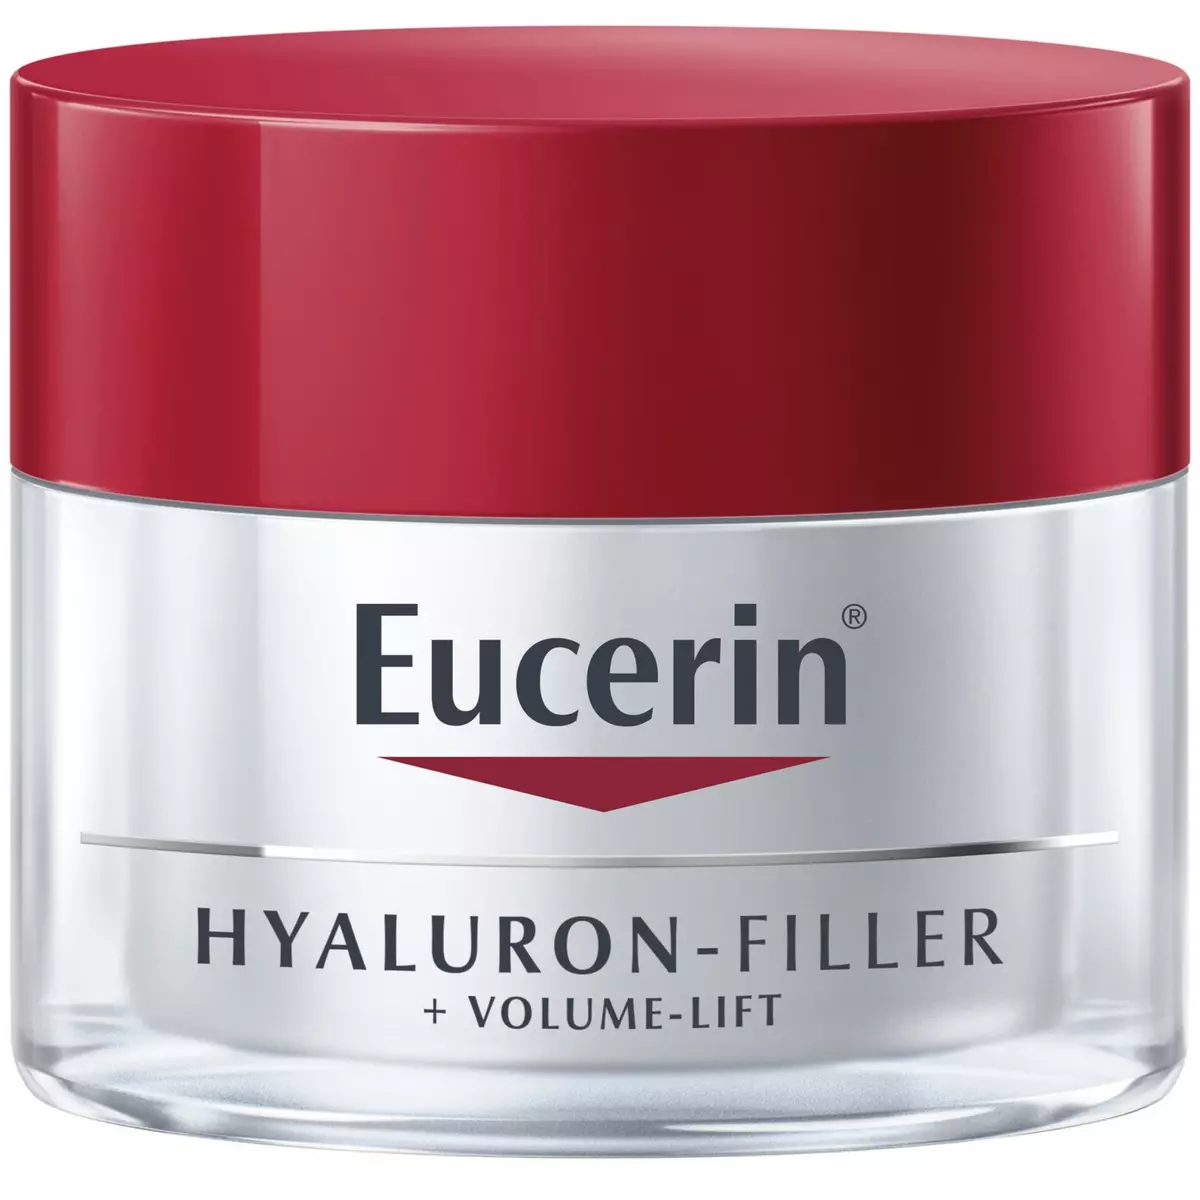 EUCERIN Hyalluron-filler + Volume-lift 50ml